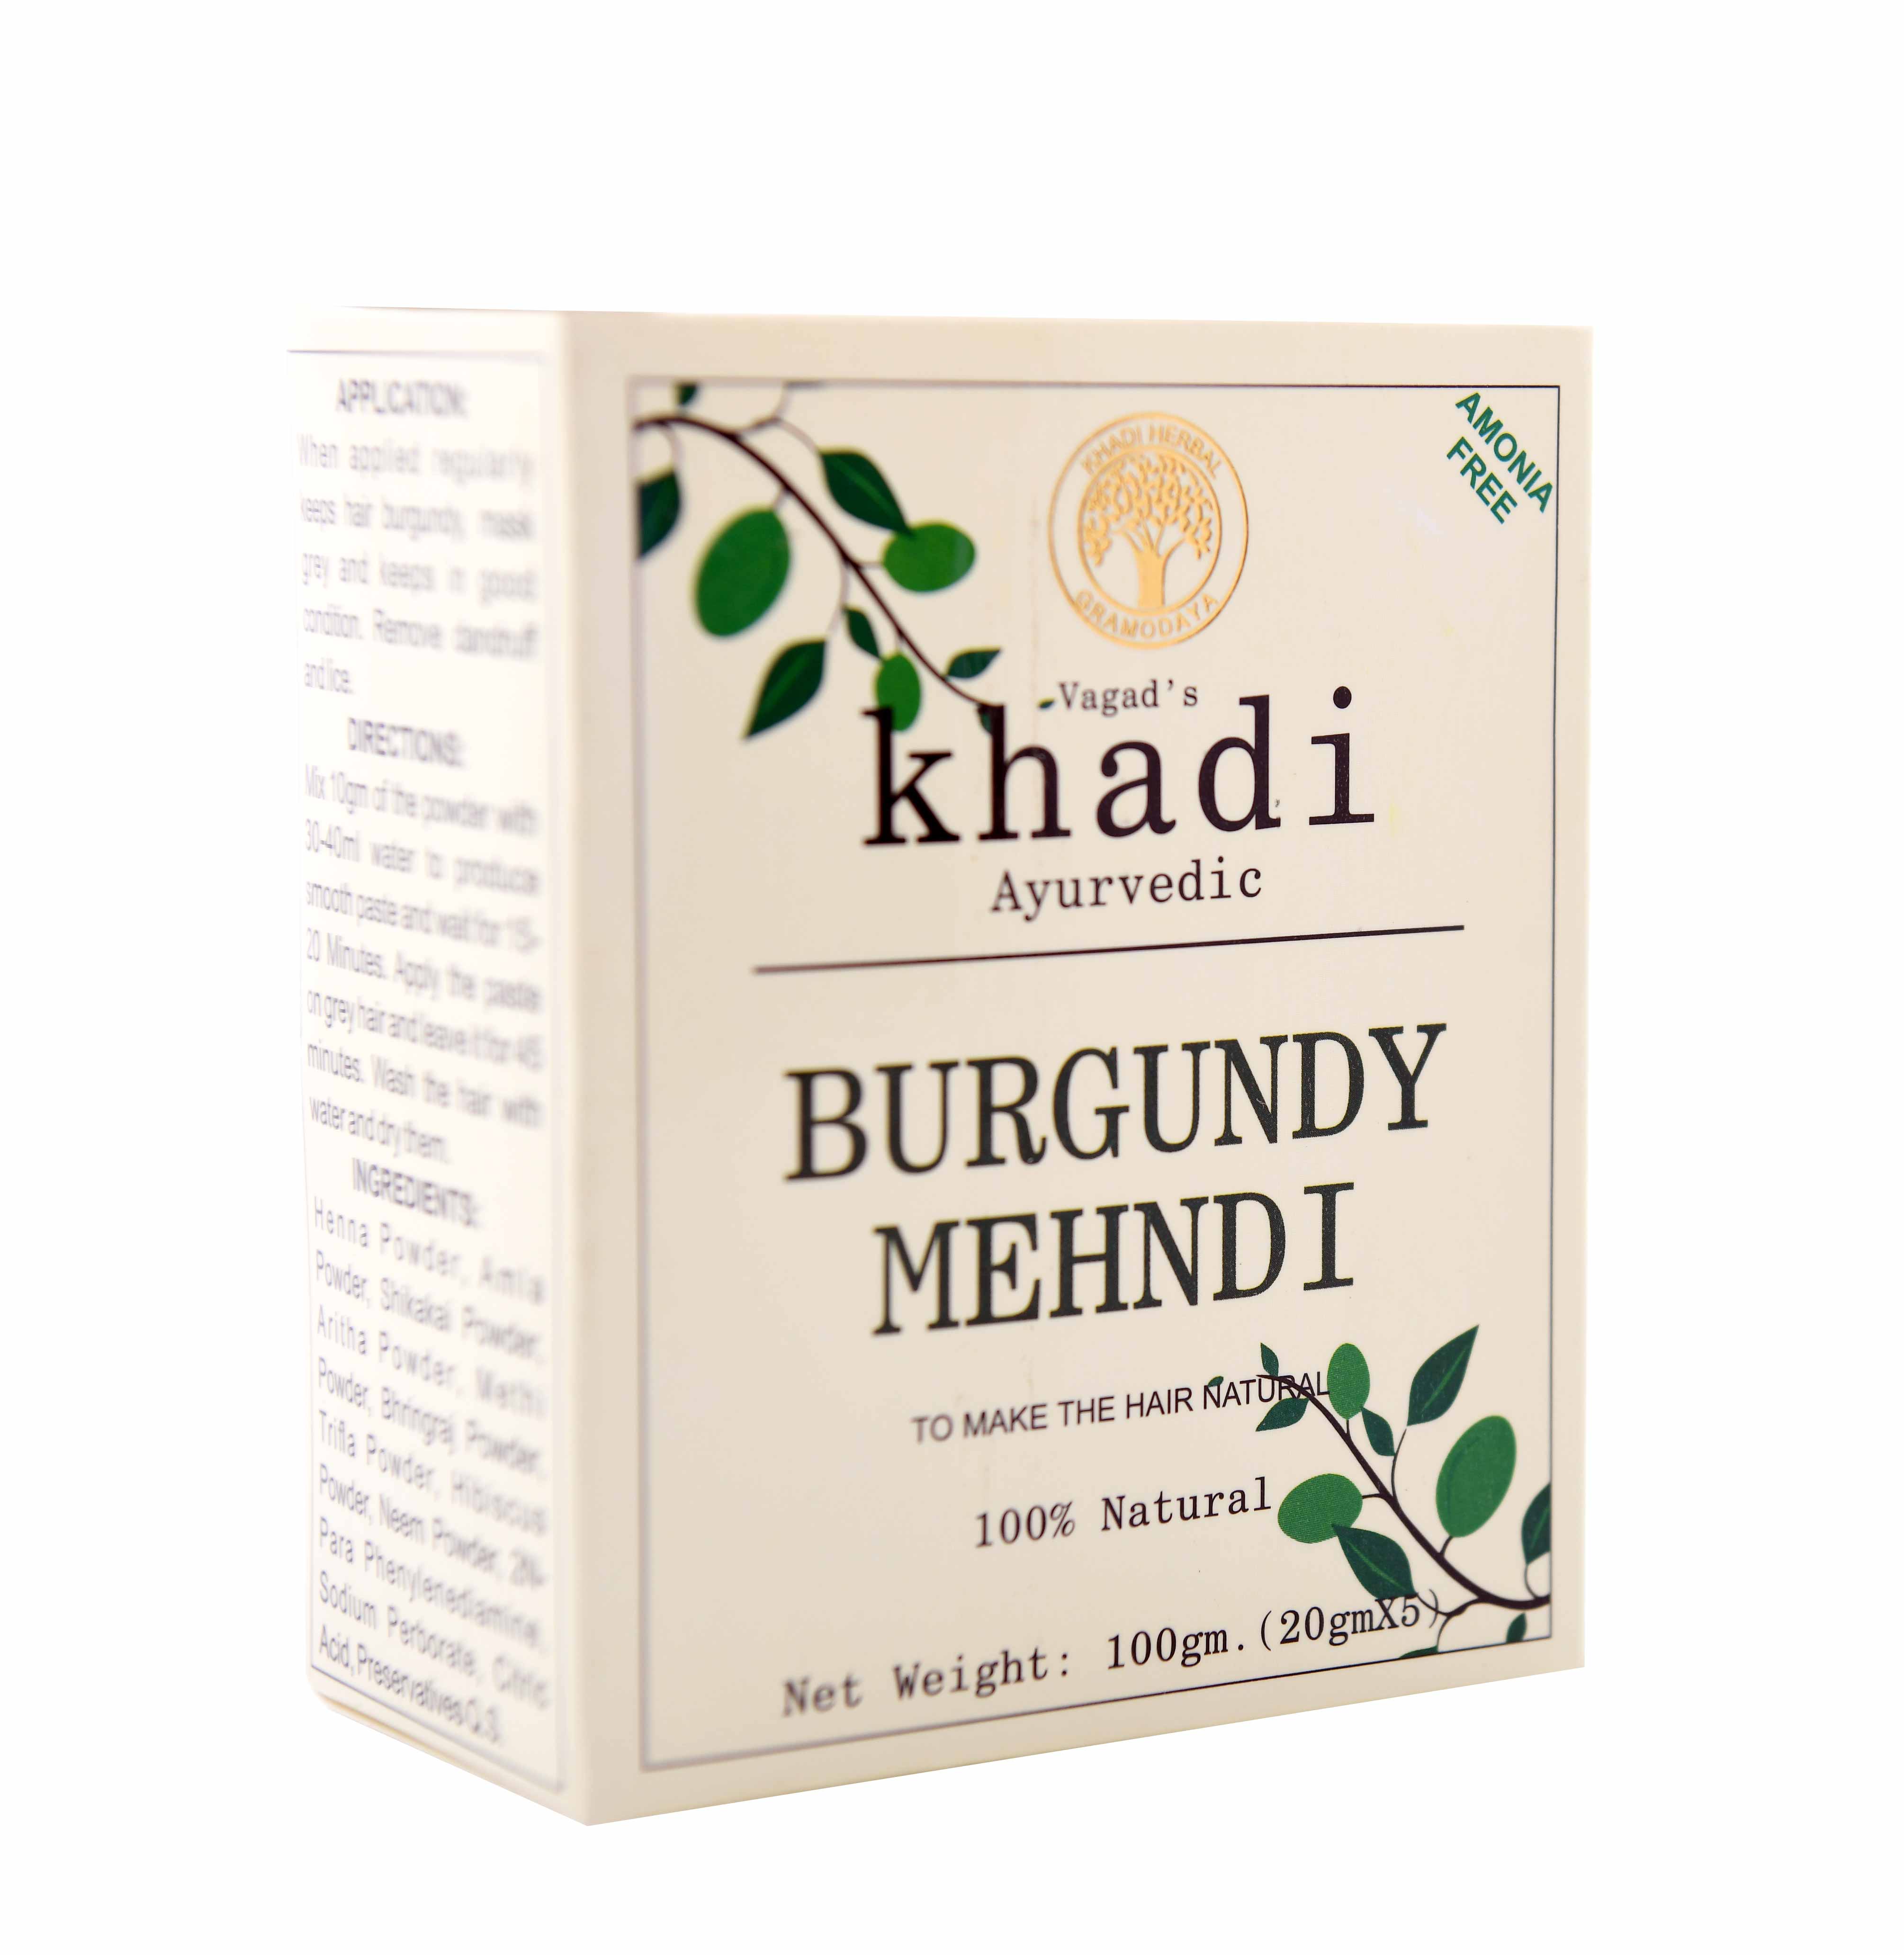 Vagad's Khadi Burgundy Mahendi Powder